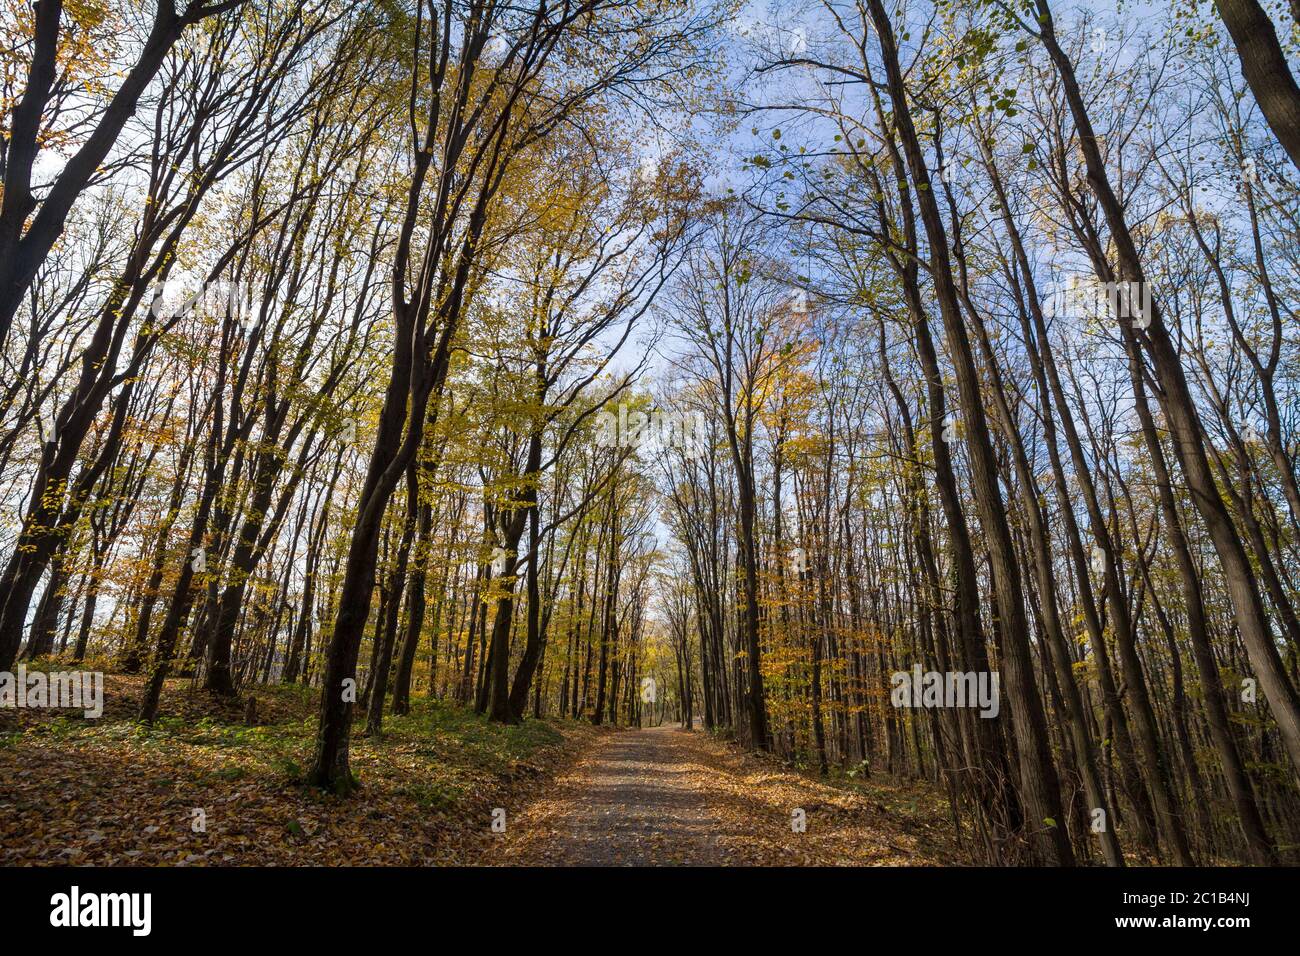 Chemin forestier, entouré de grands arbres à feuilles dans leurs couleurs automnales jaunes, dans les Bois Fruska Gora, un parc de Voivodina, en Serbie. Image o Banque D'Images